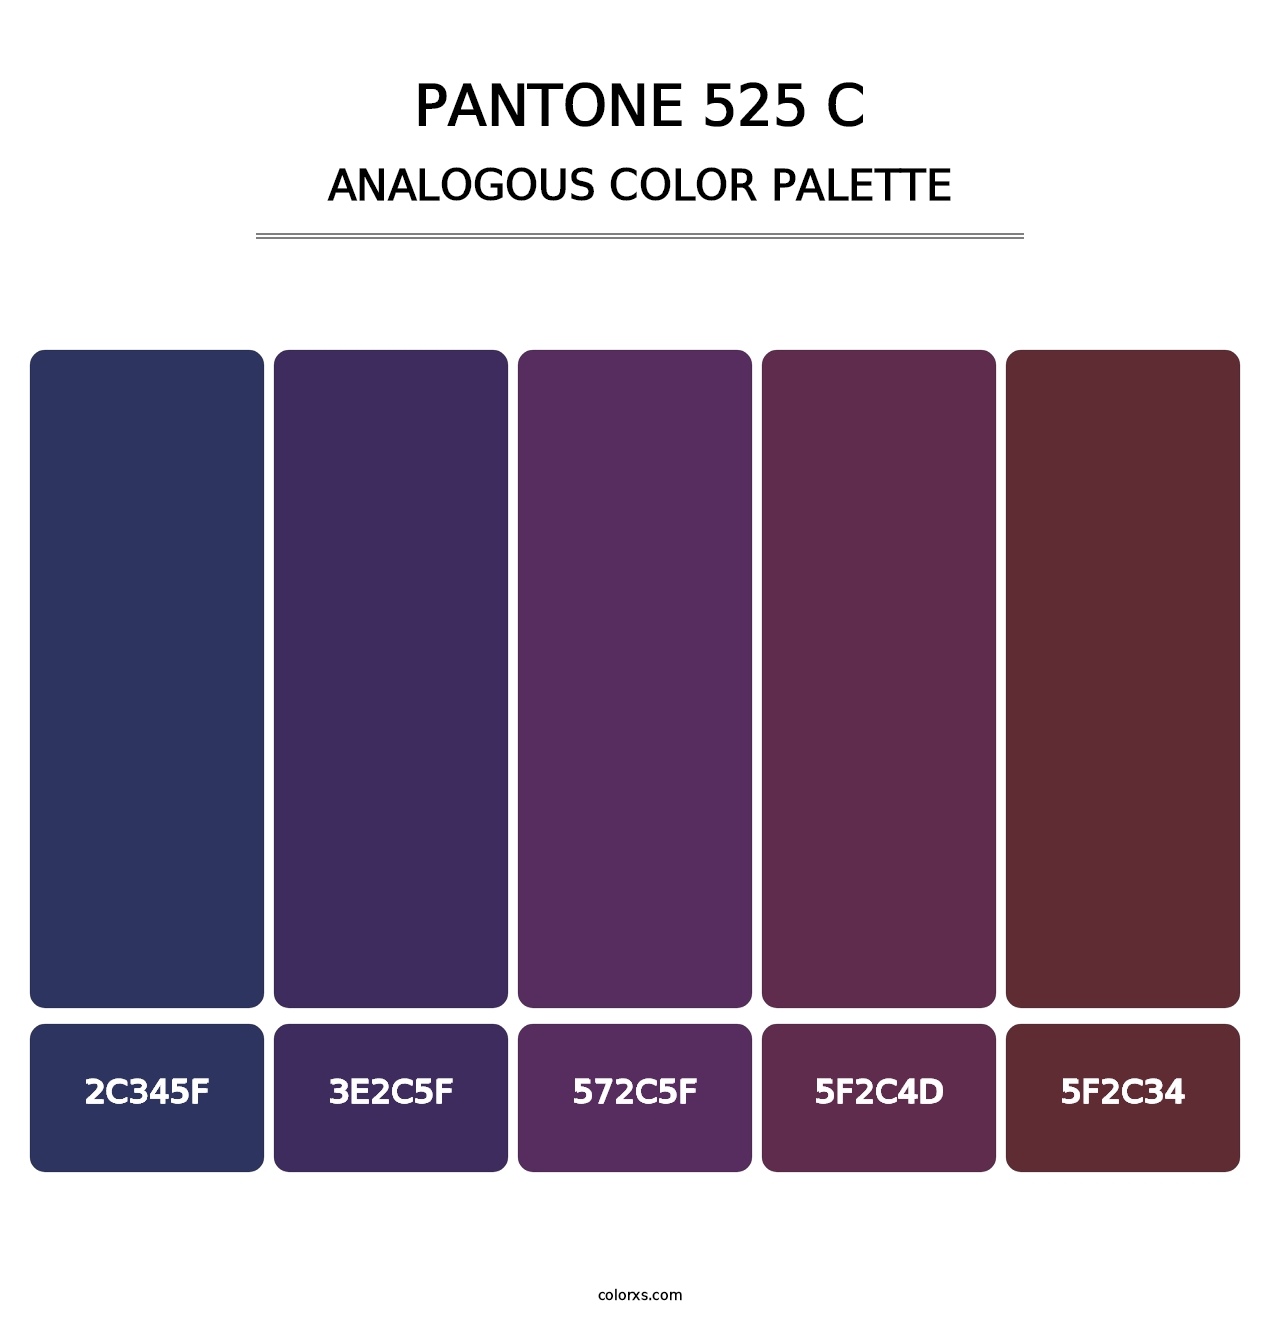 PANTONE 525 C - Analogous Color Palette